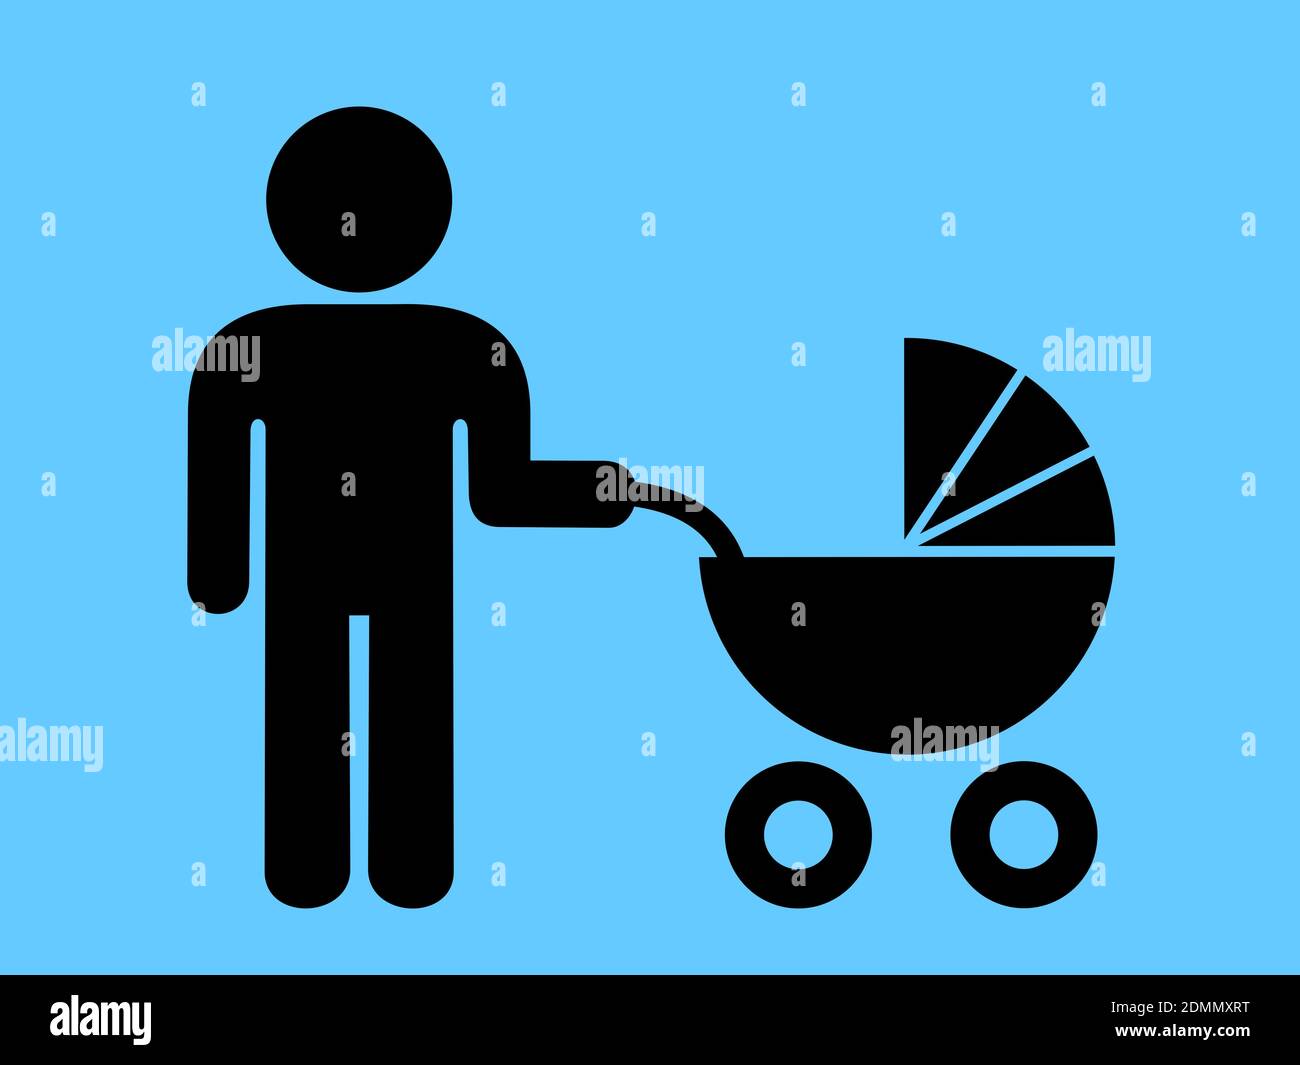 Père moderne - l'homme en congé parental - l'homme allaite et s'occupe de l'enfant, de l'enfant et du bébé dans la porte-bébé. Illustration vectorielle Banque D'Images